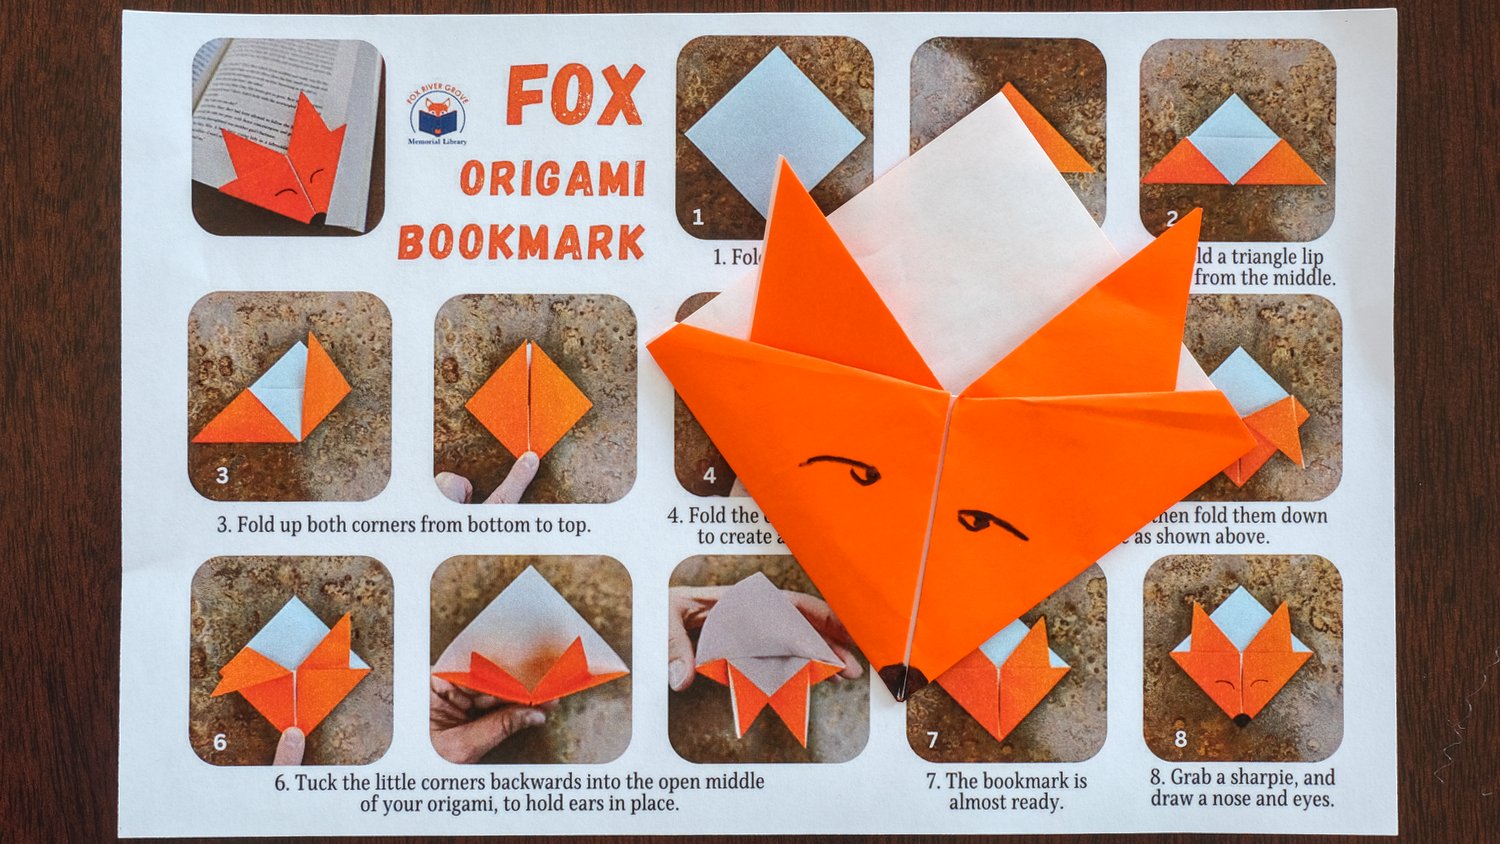 Fox origami bookmark.